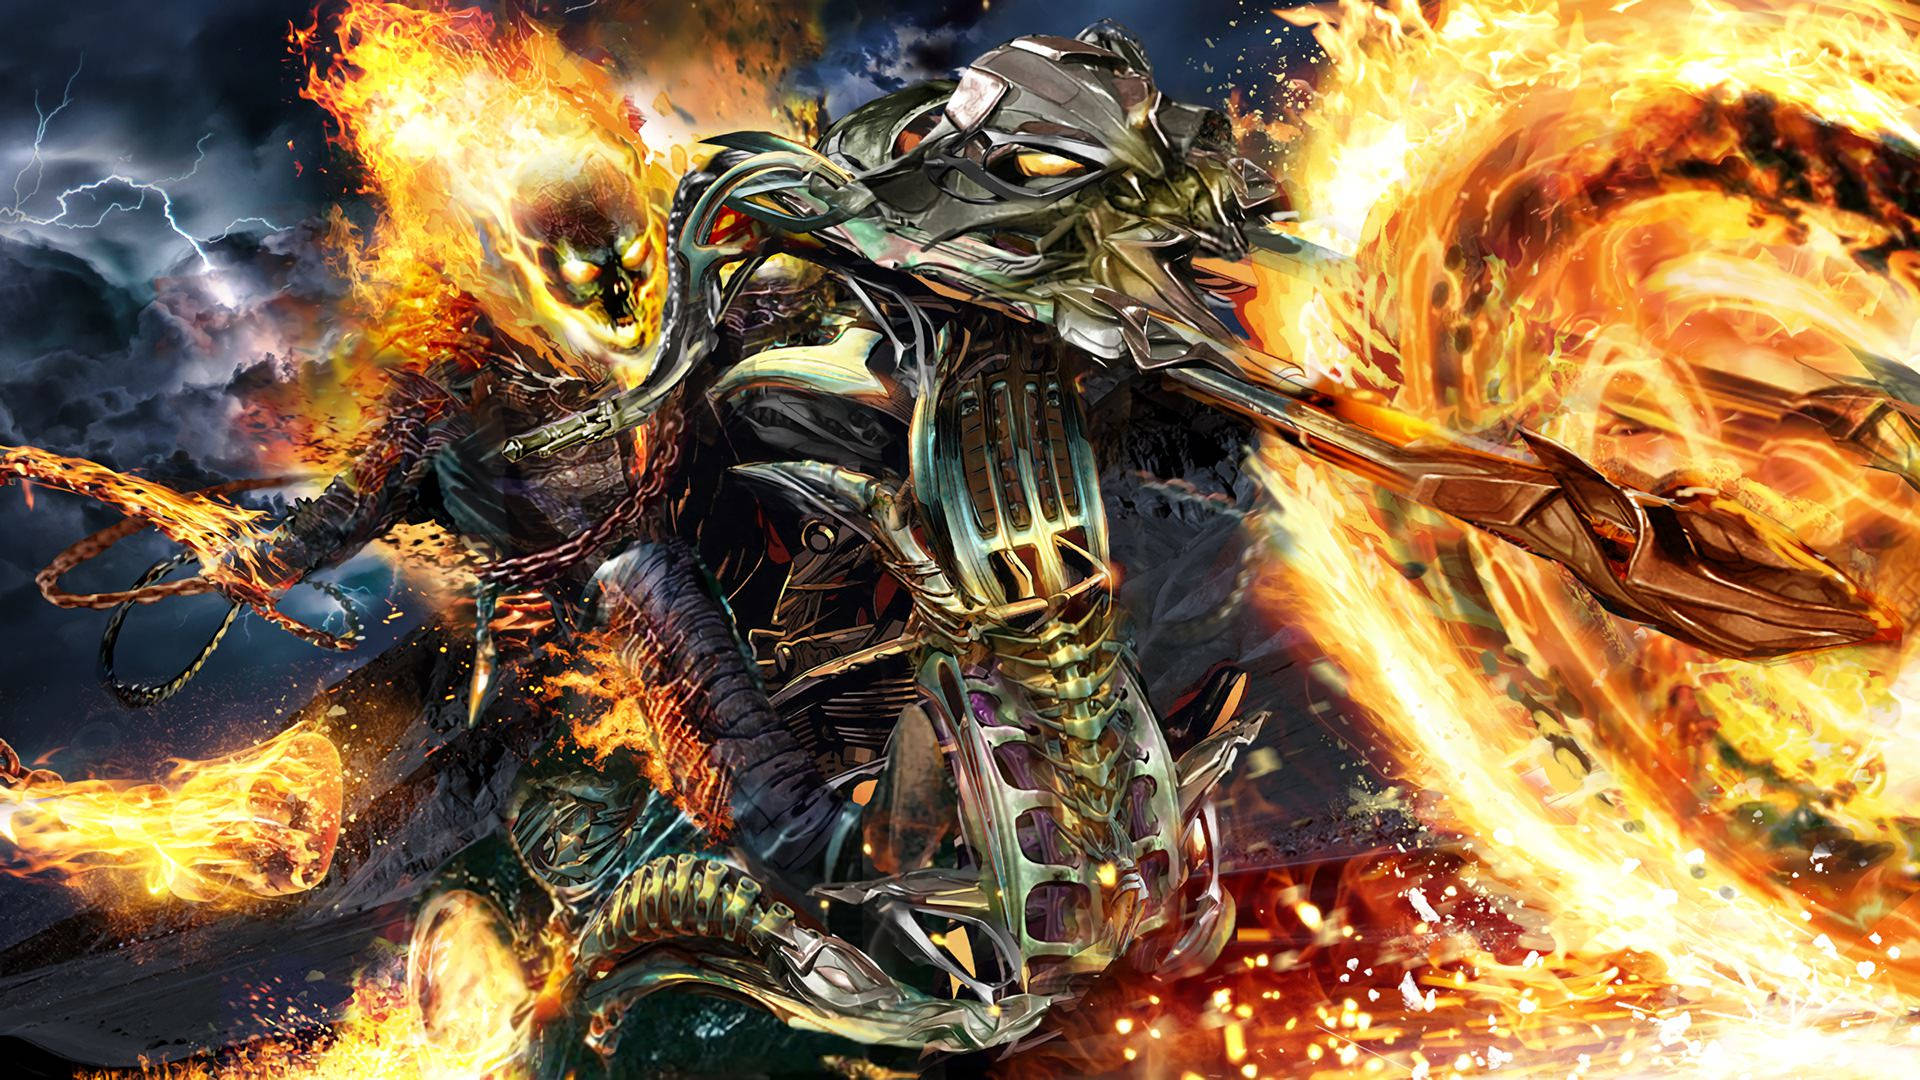 Hell King Ghost Rider Wallpaper